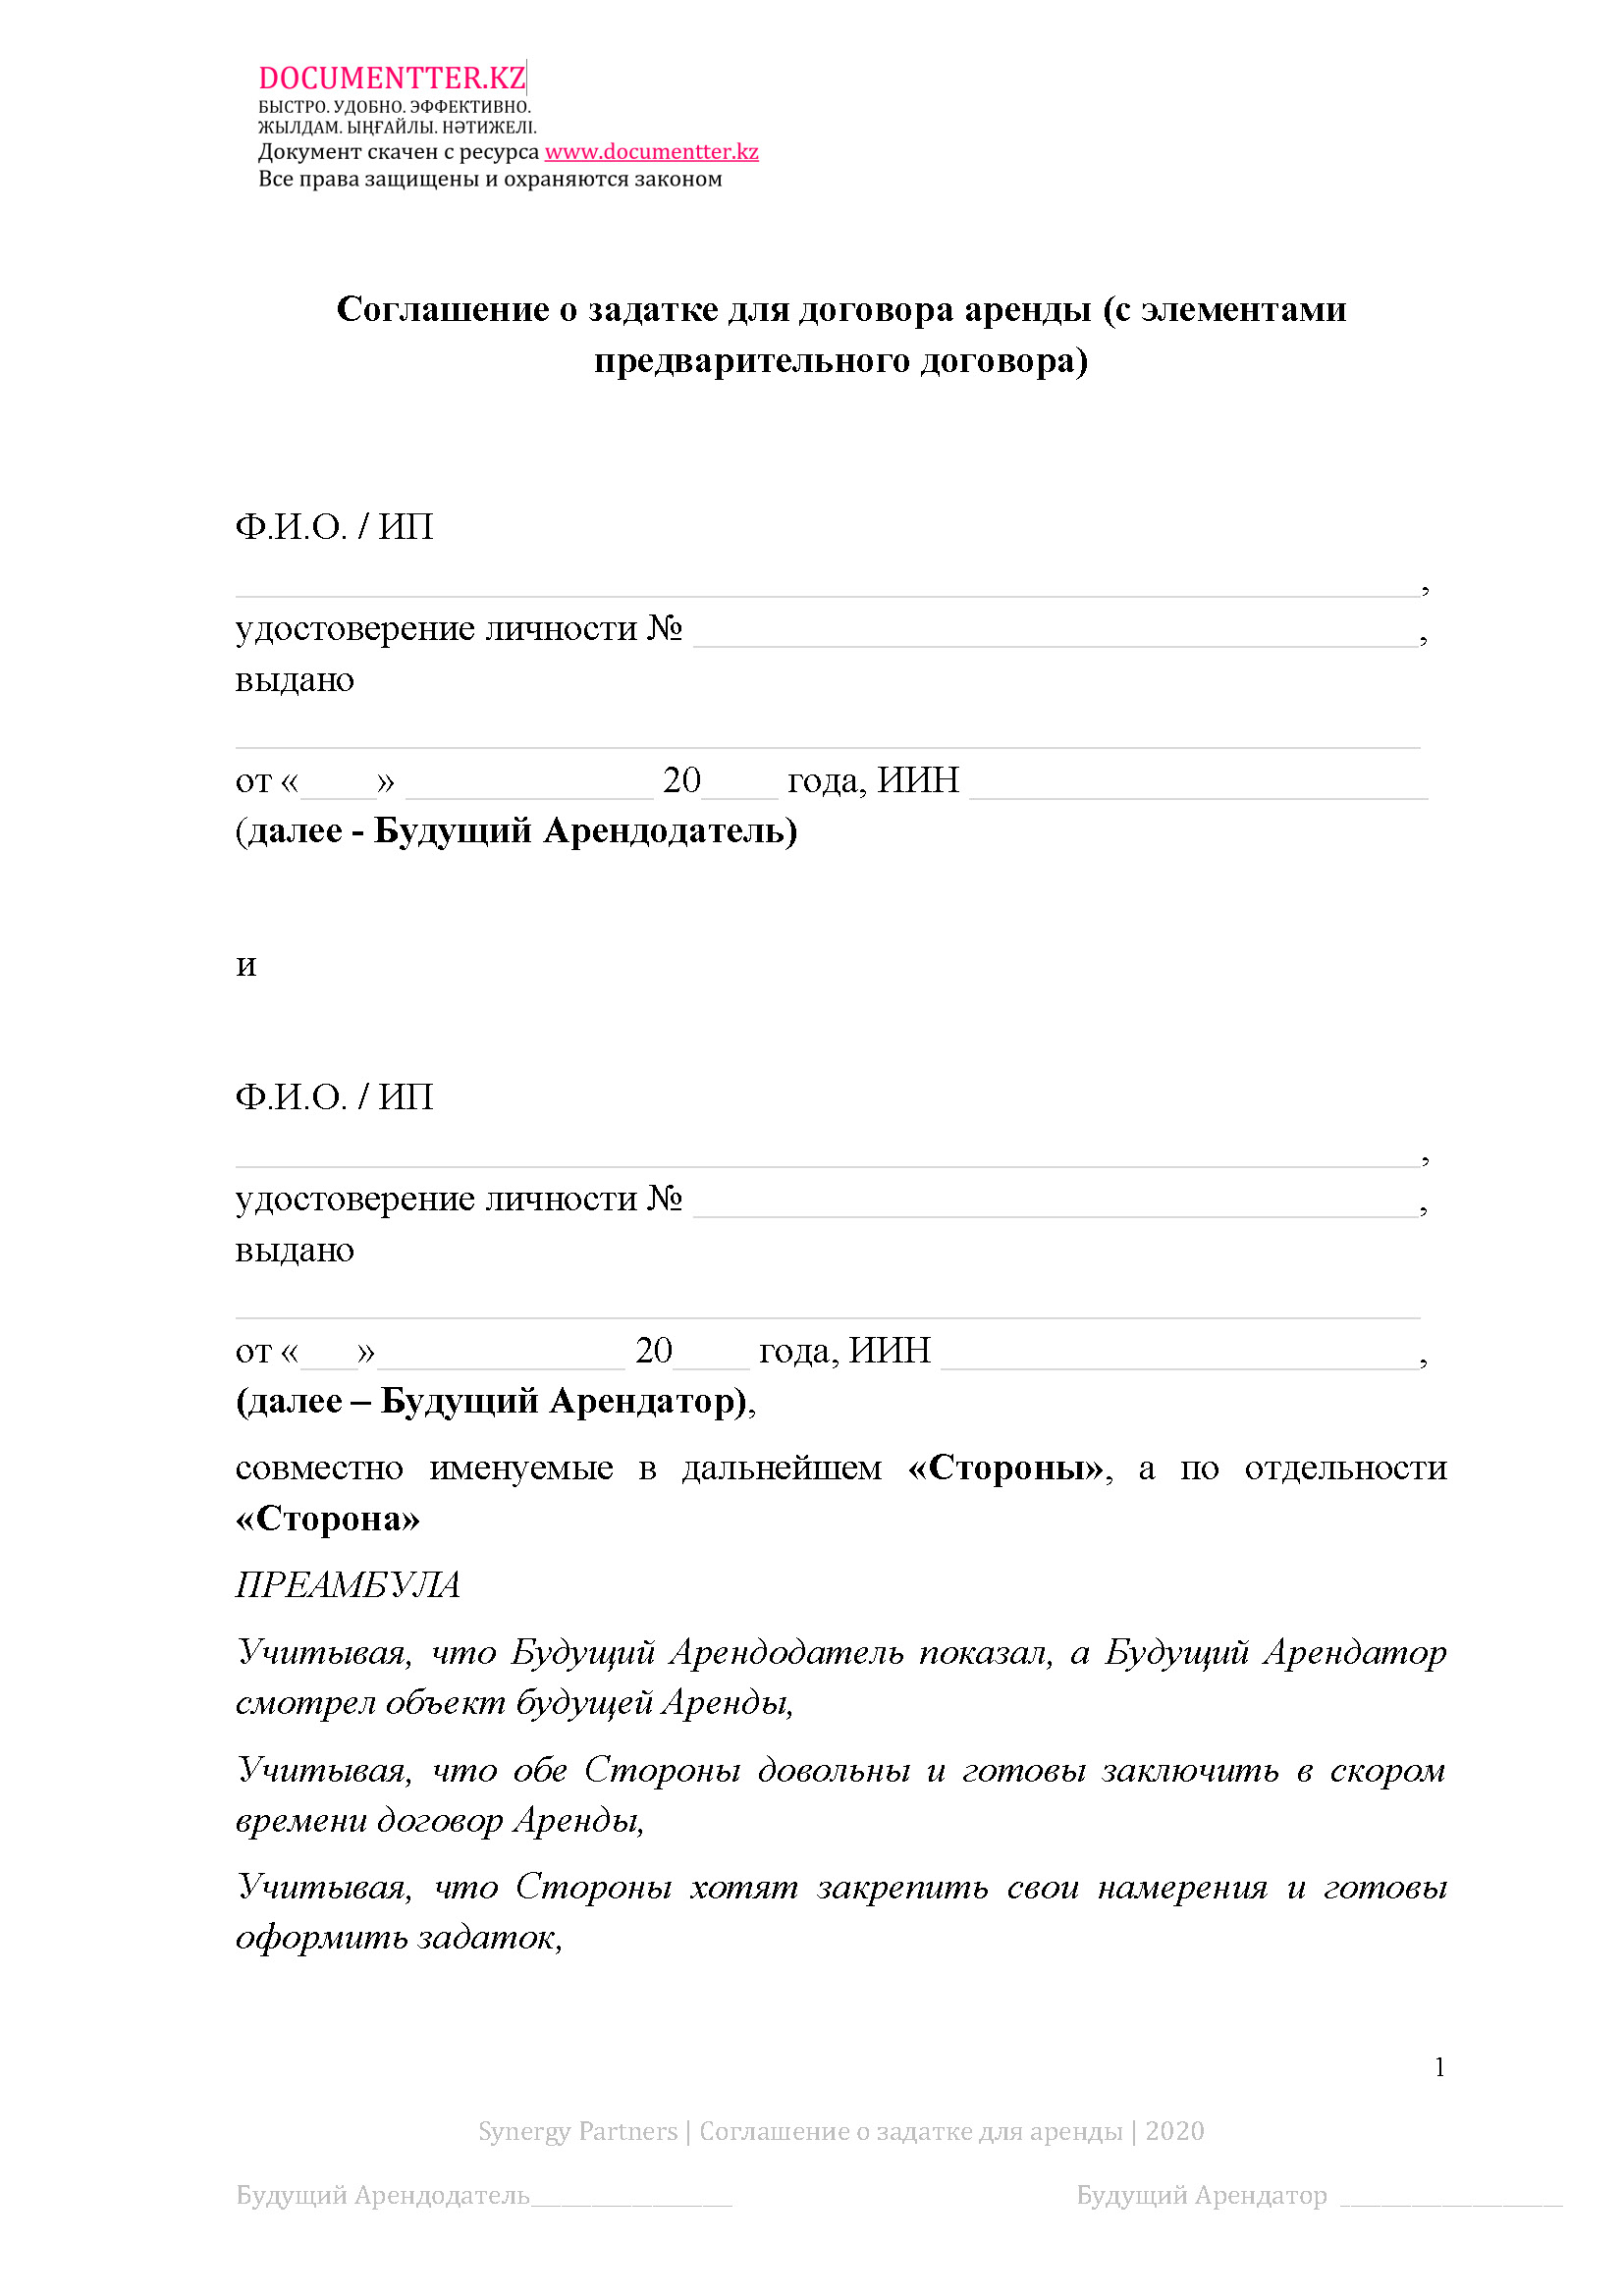 Соглашение о внесении задатка для аренды  12 | documentter.kz в Казахстане 